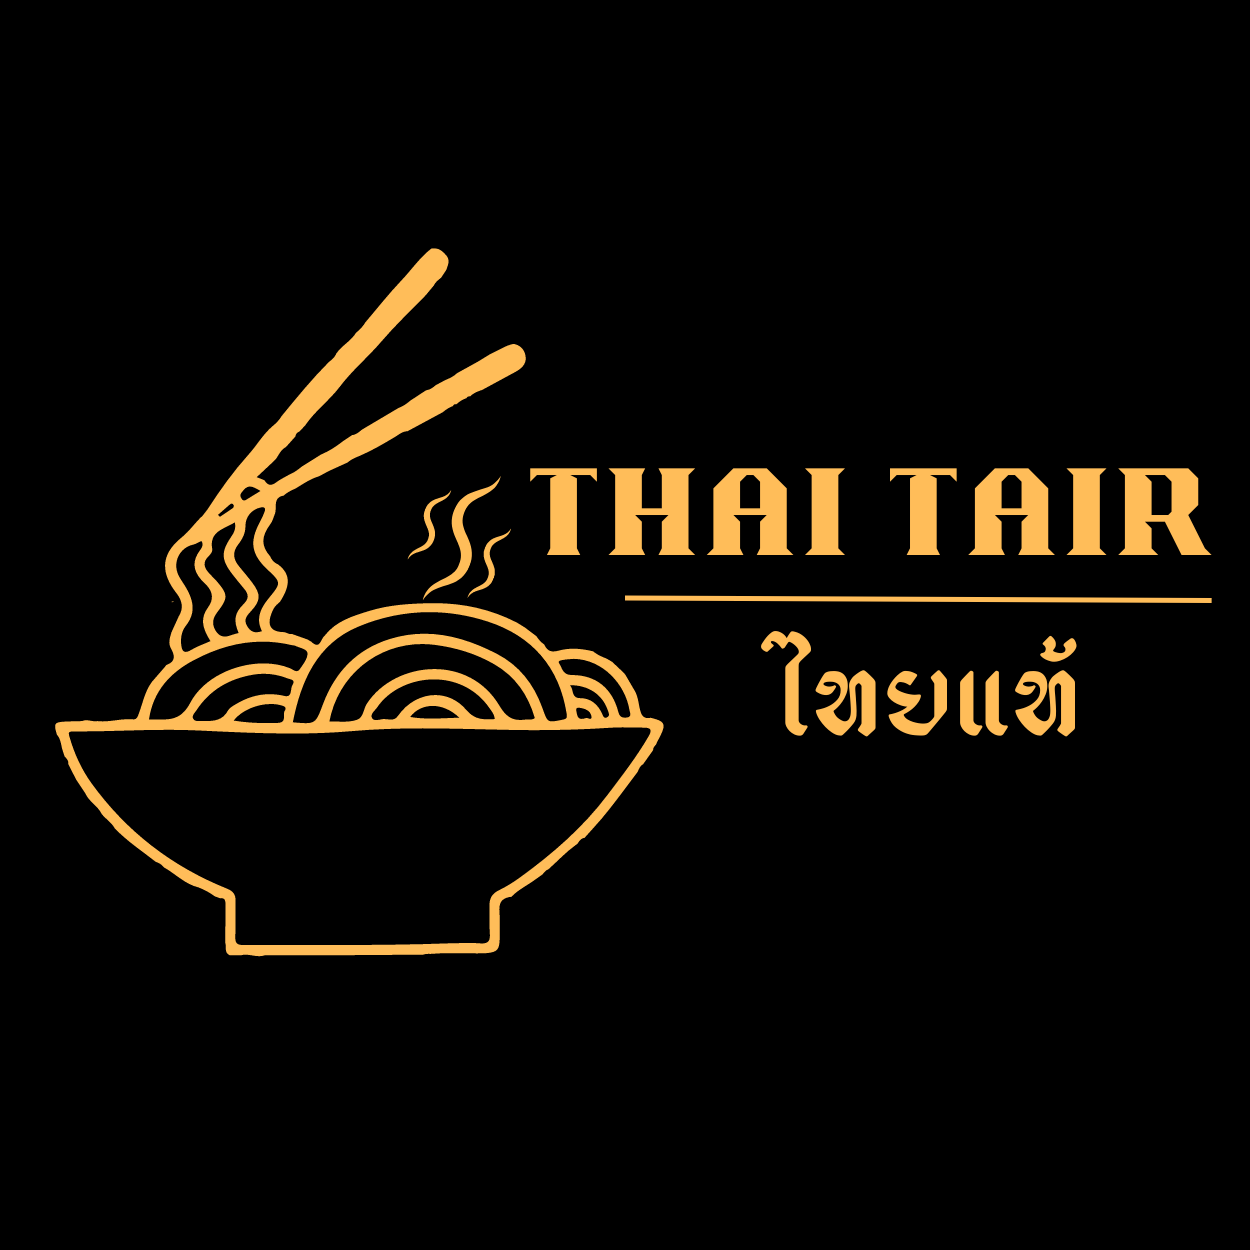 Thai Tair 